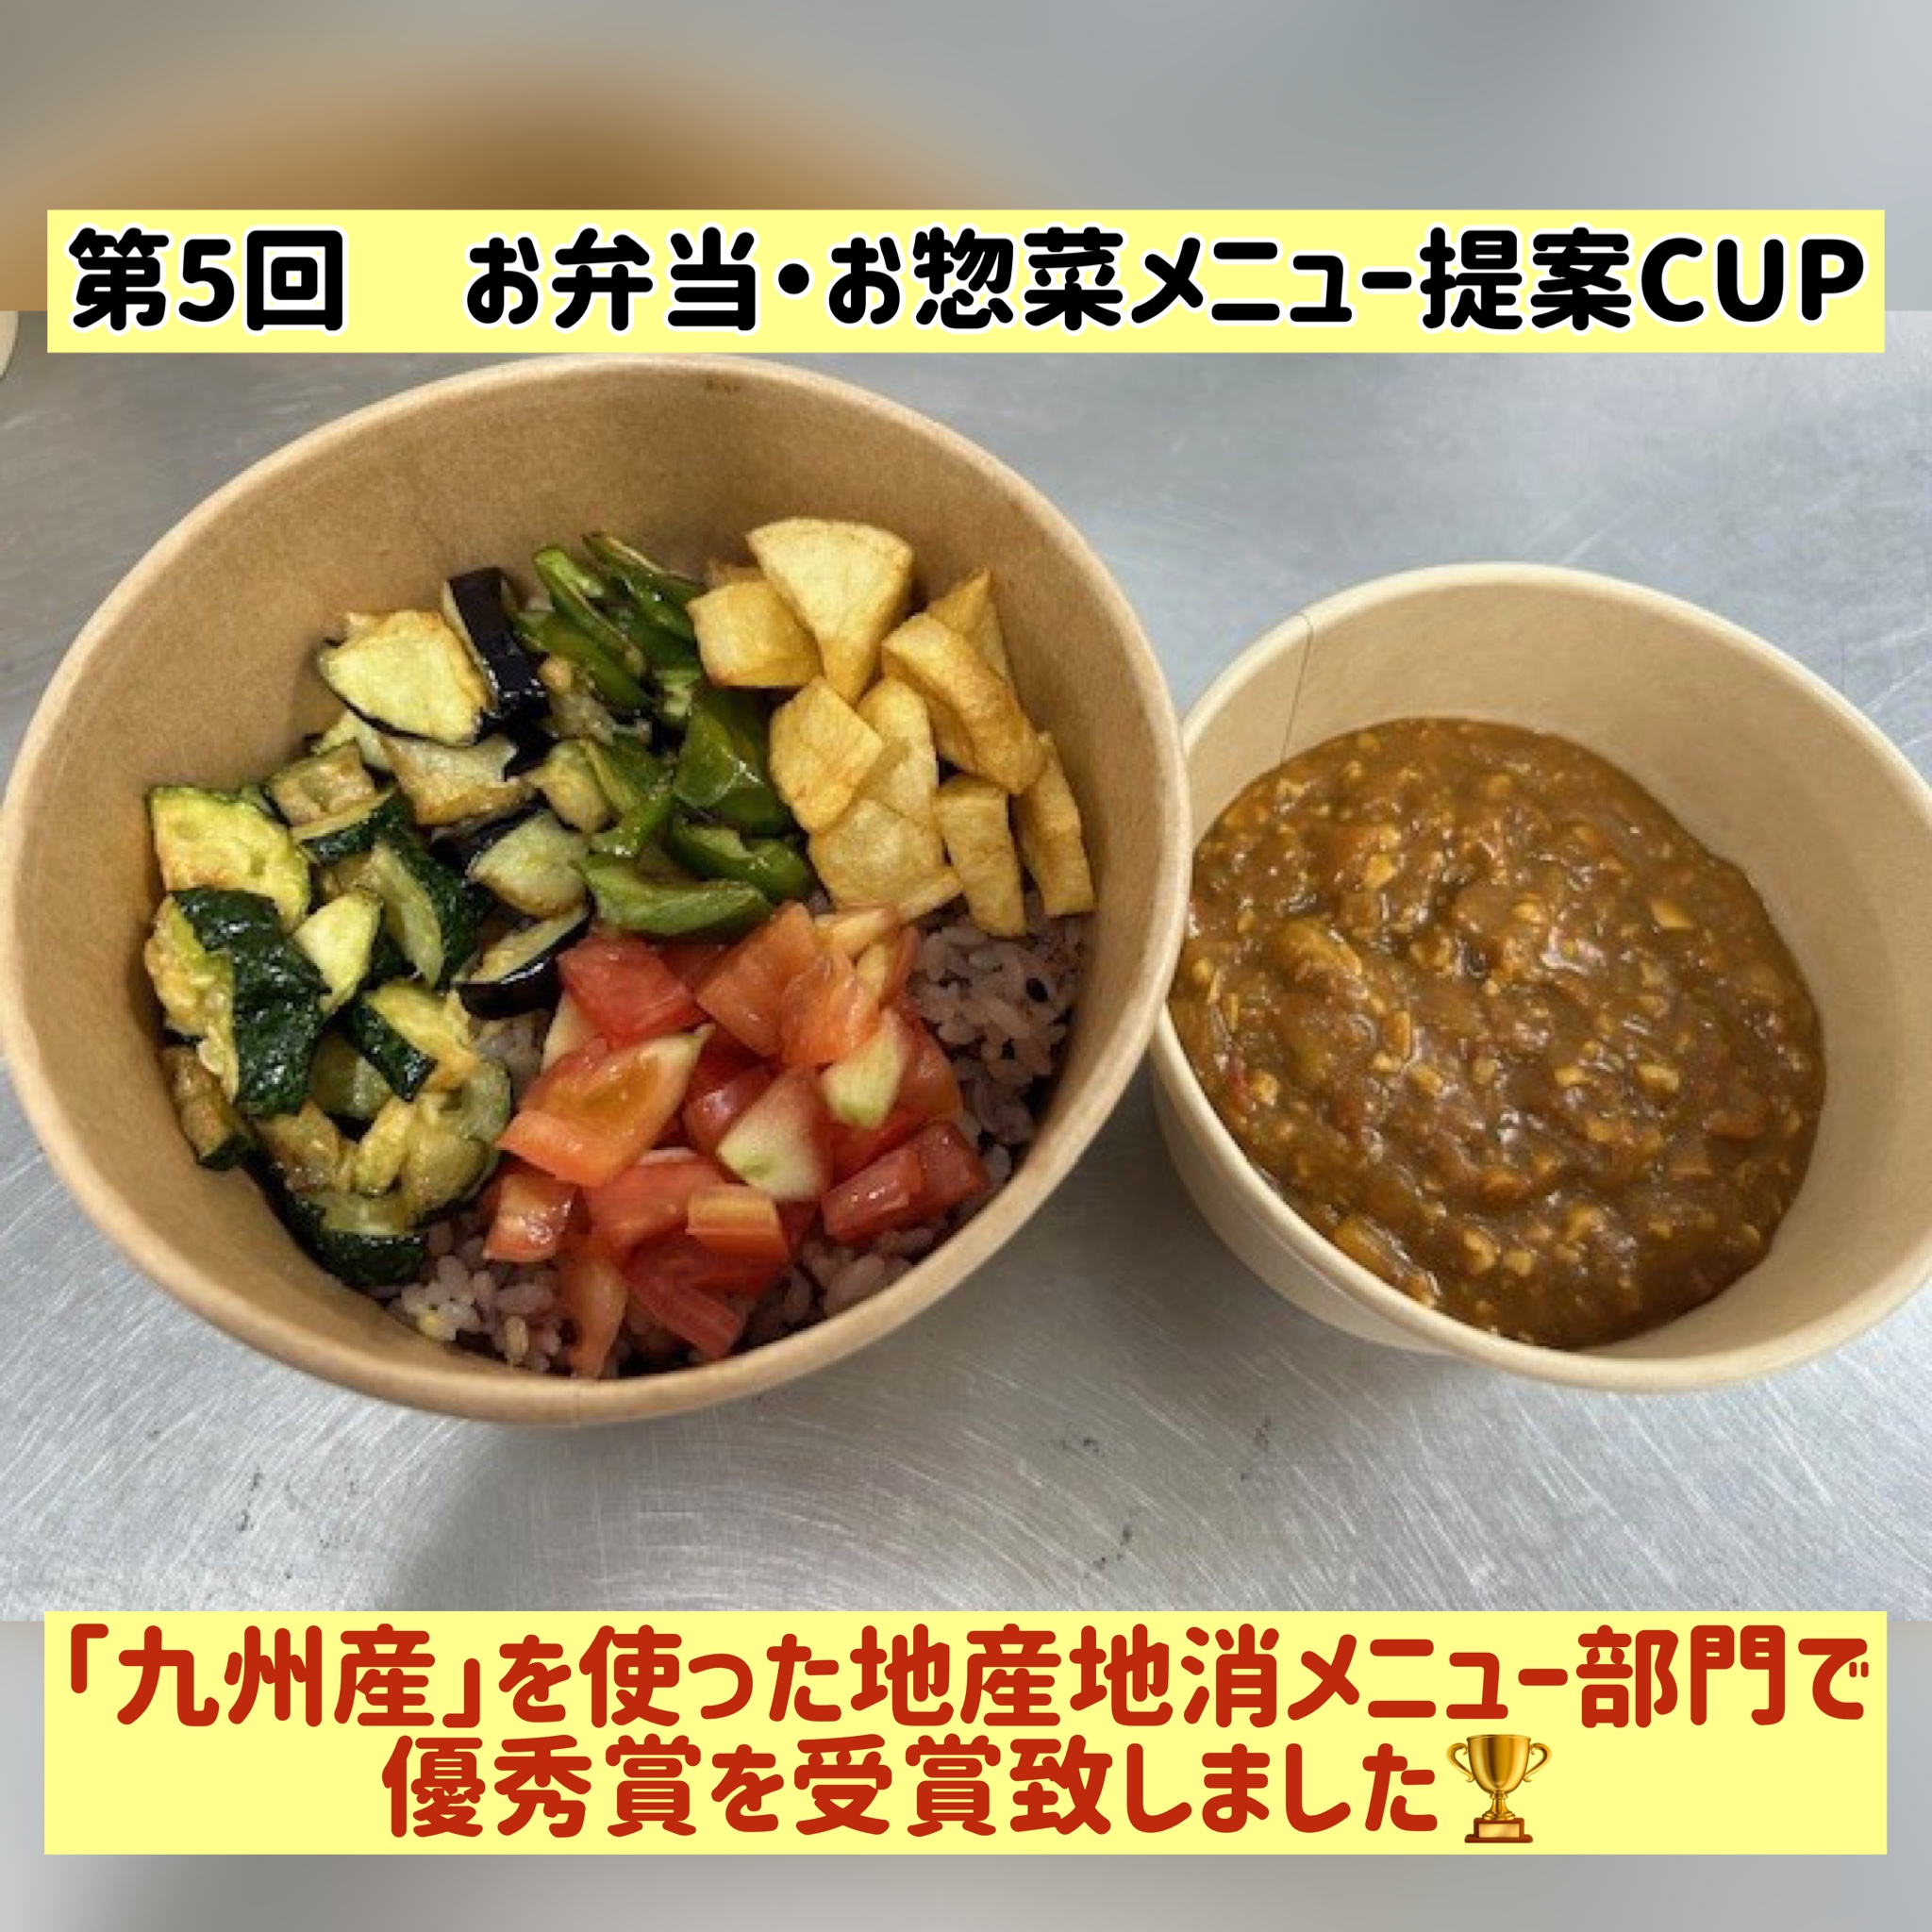 第5回 お弁当・お惣菜メニュー提案CUPにて優秀賞を受賞しました。